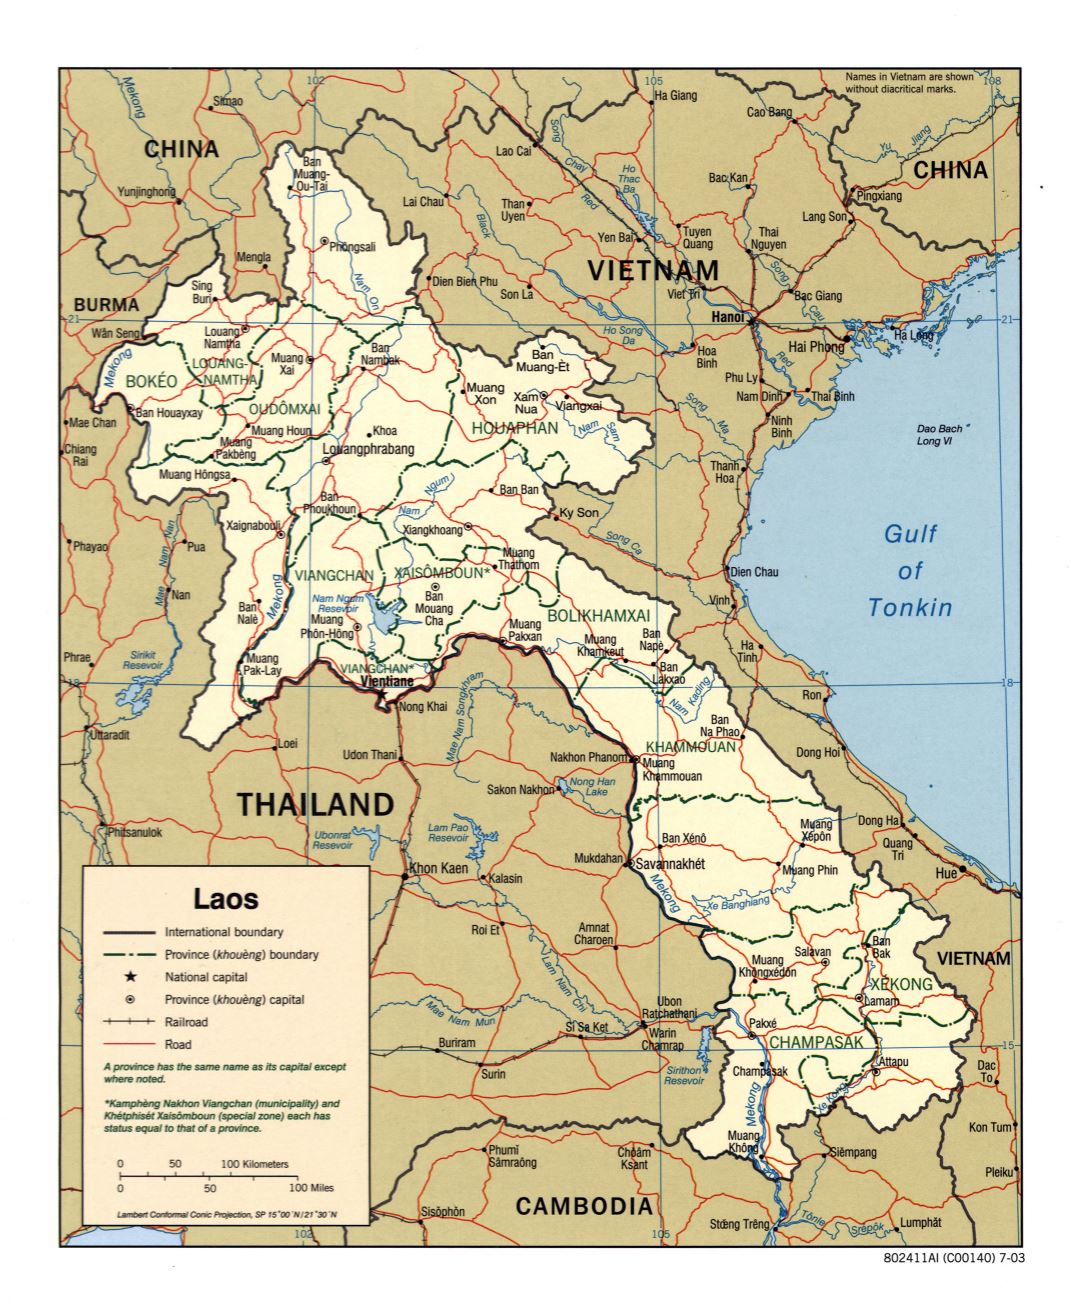 Крупномасштабная политическая и административная карта Лаоса с дорогами, железными дорогами и крупными городами - 2003